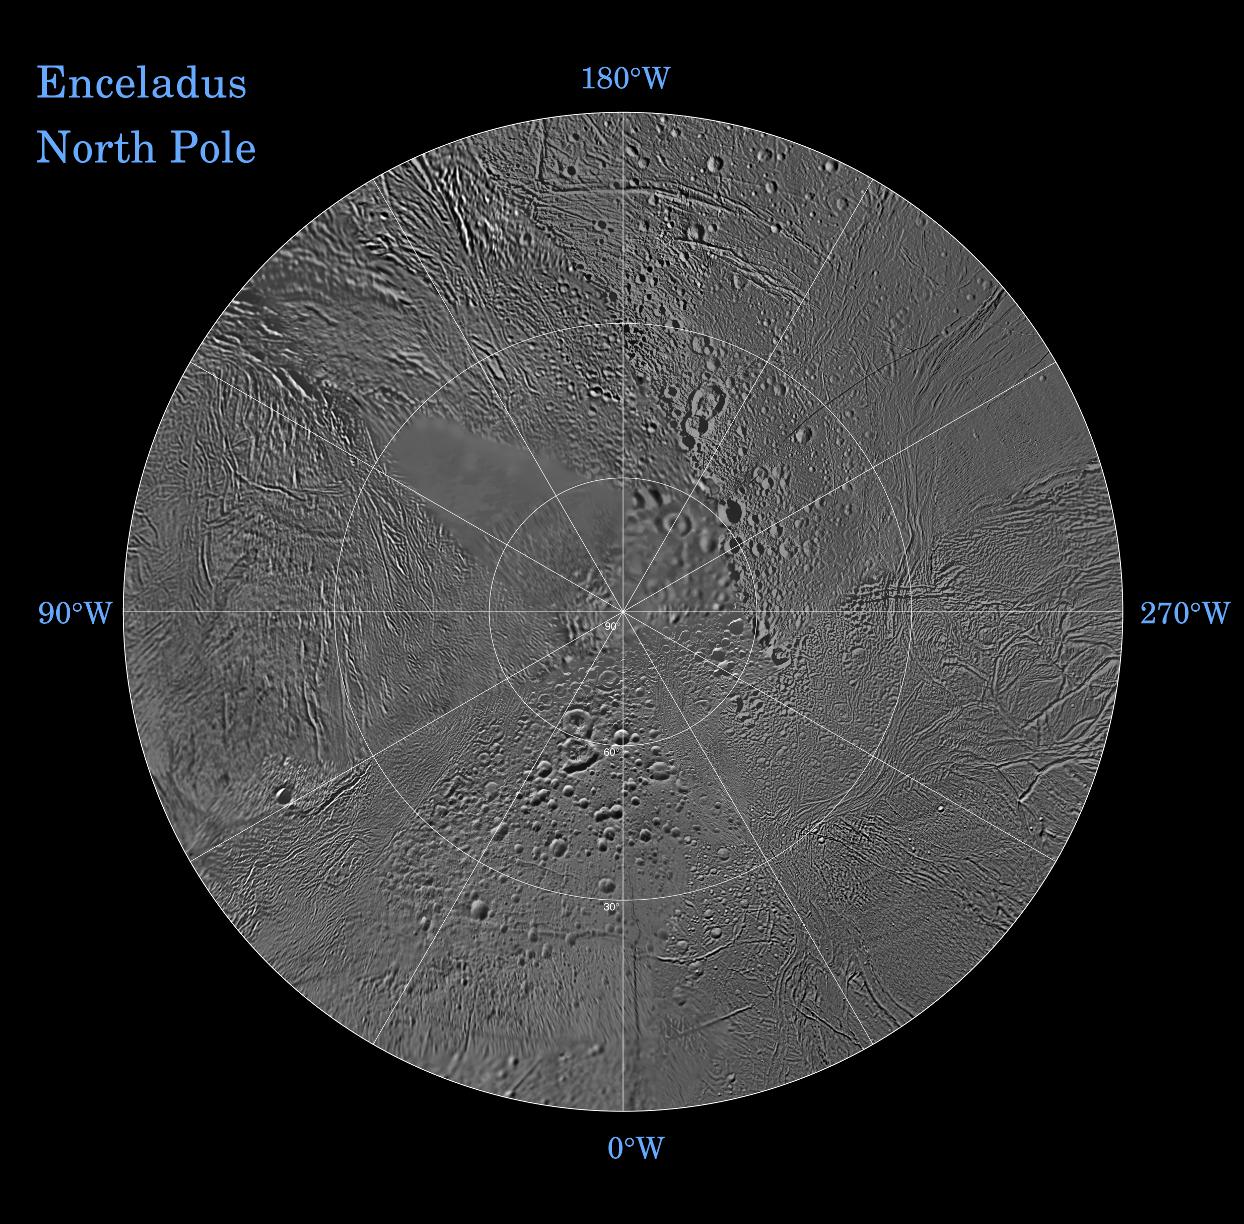 The northern hemisphere of Enceladus